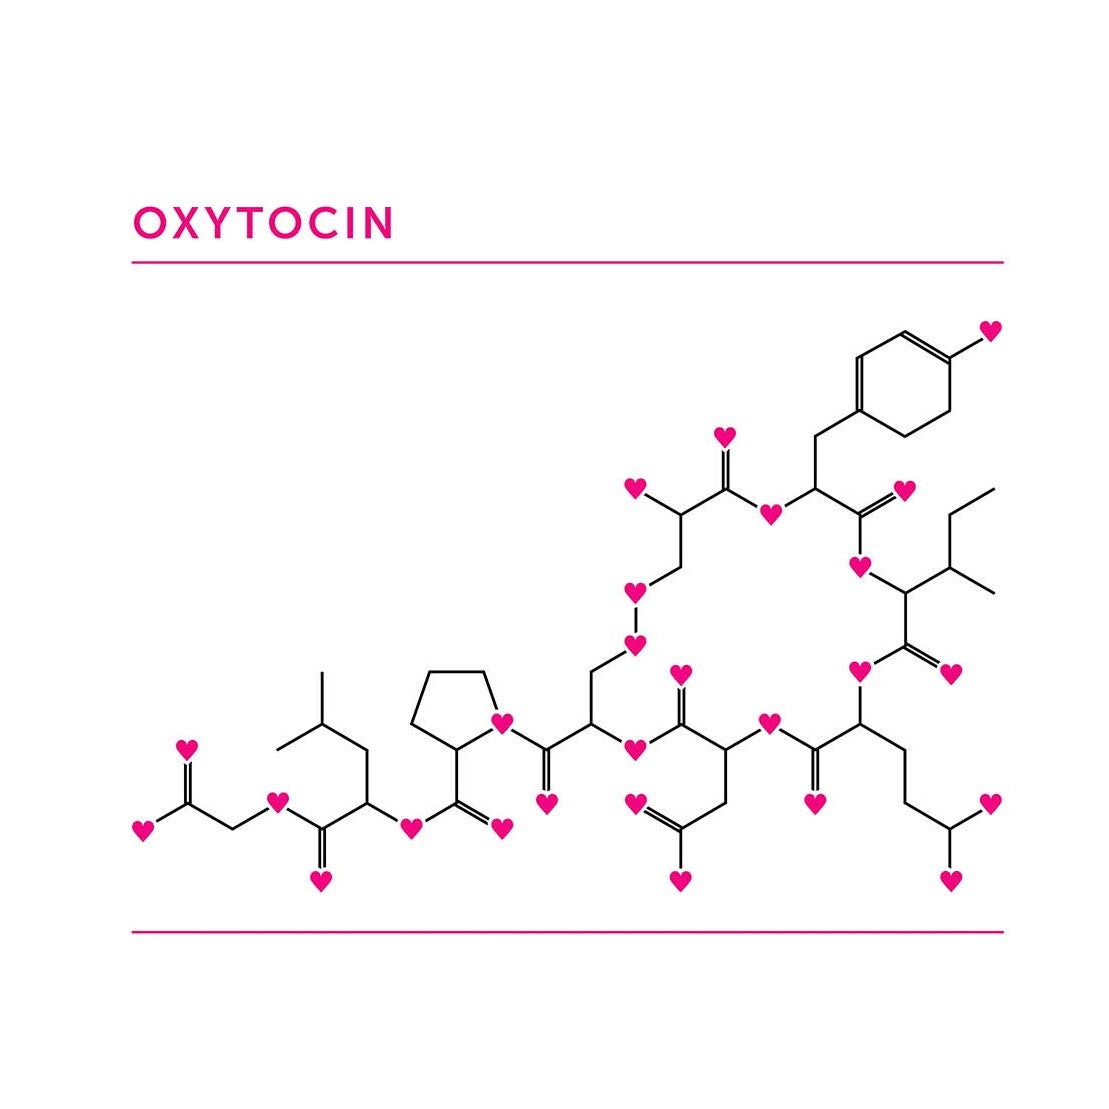 Oxytocin Tote Bag